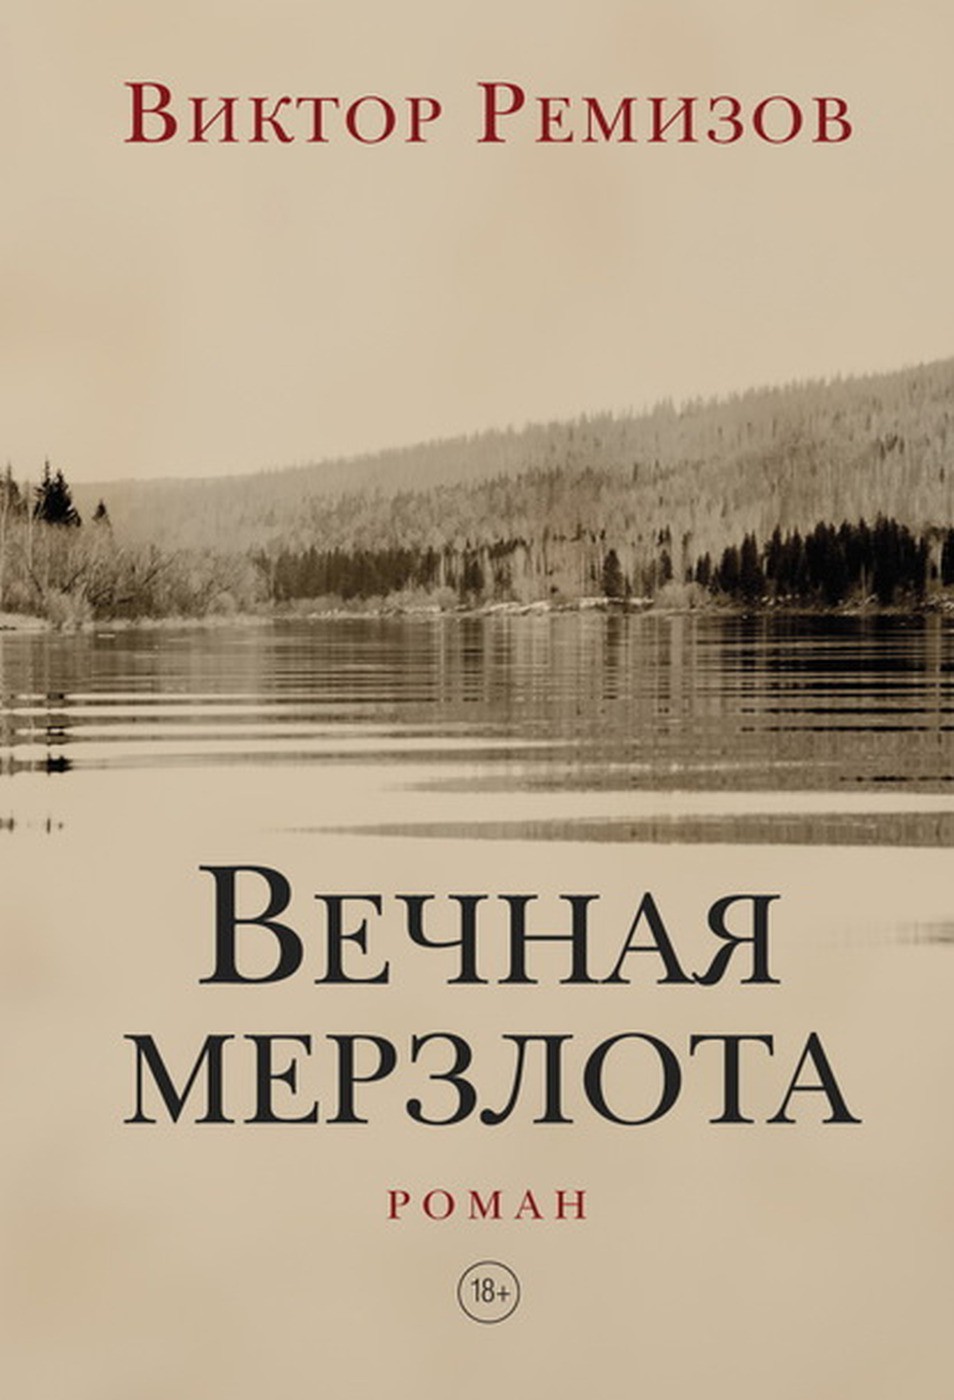 Обложка романа «Вечная мерзлота»